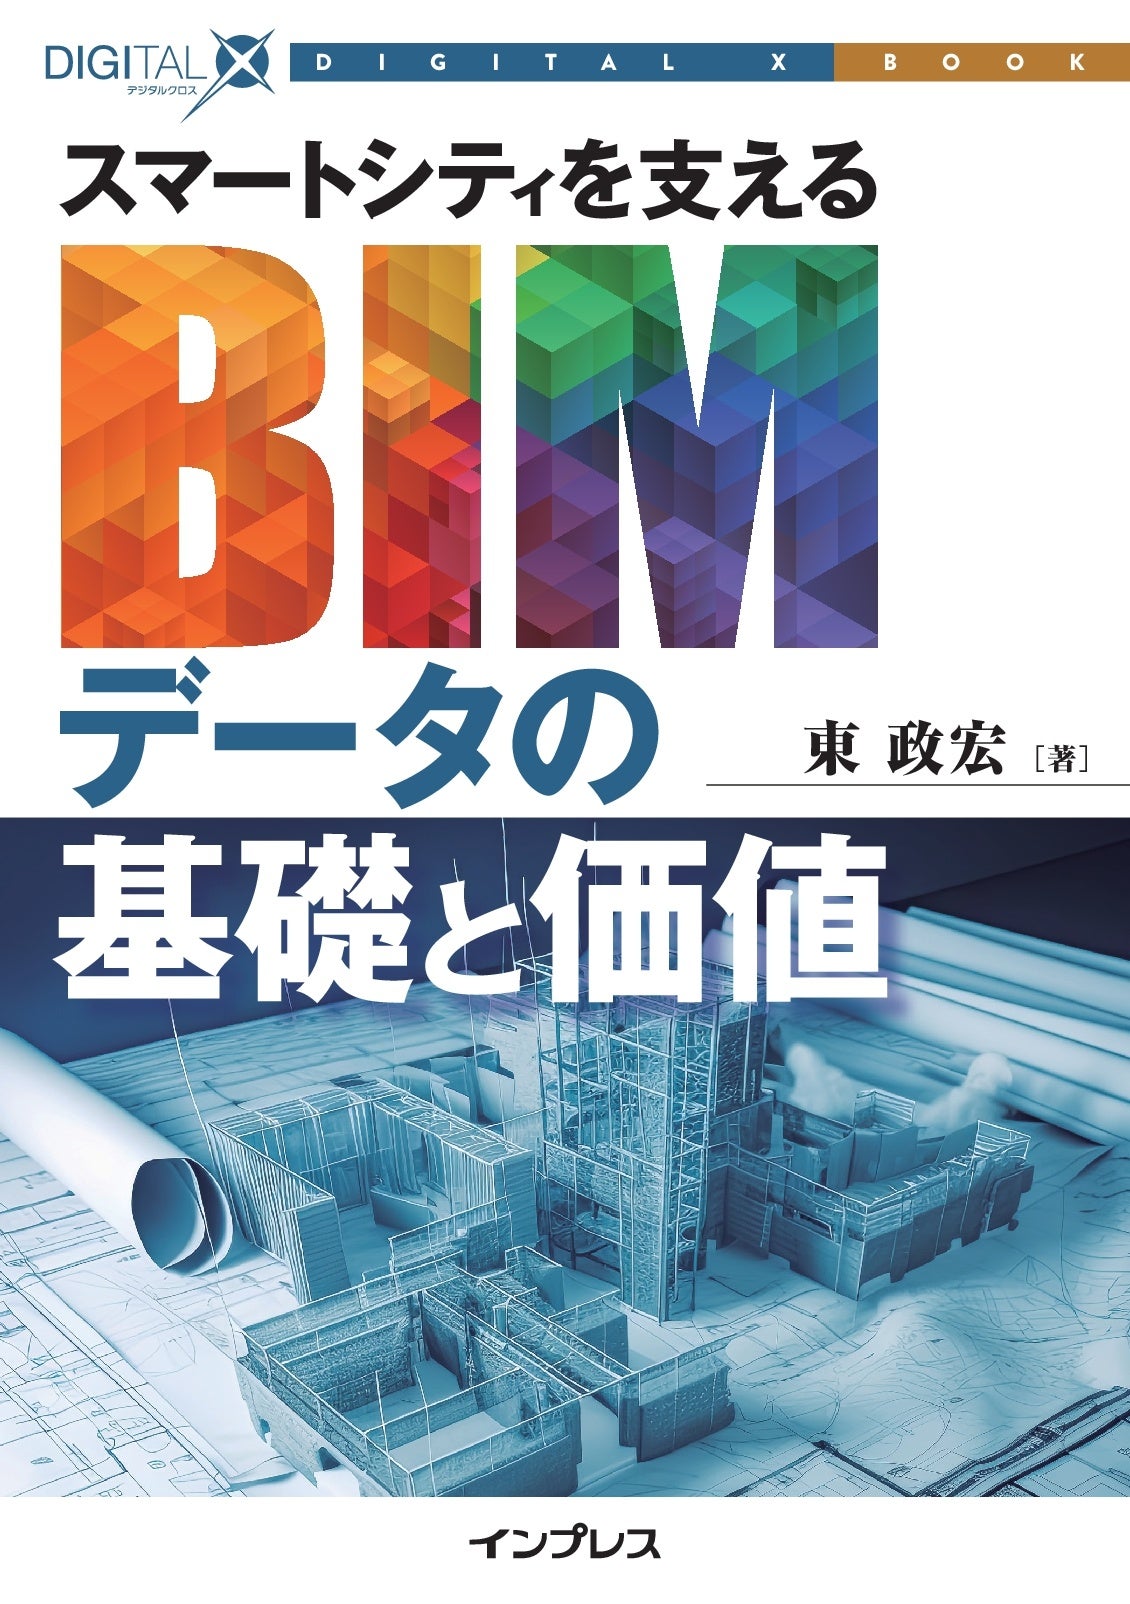 都市のデジタル化を支えるBIMデータの基礎を解説『スマートシティを支えるBIMデータの基礎と価値』発行! DIGI...